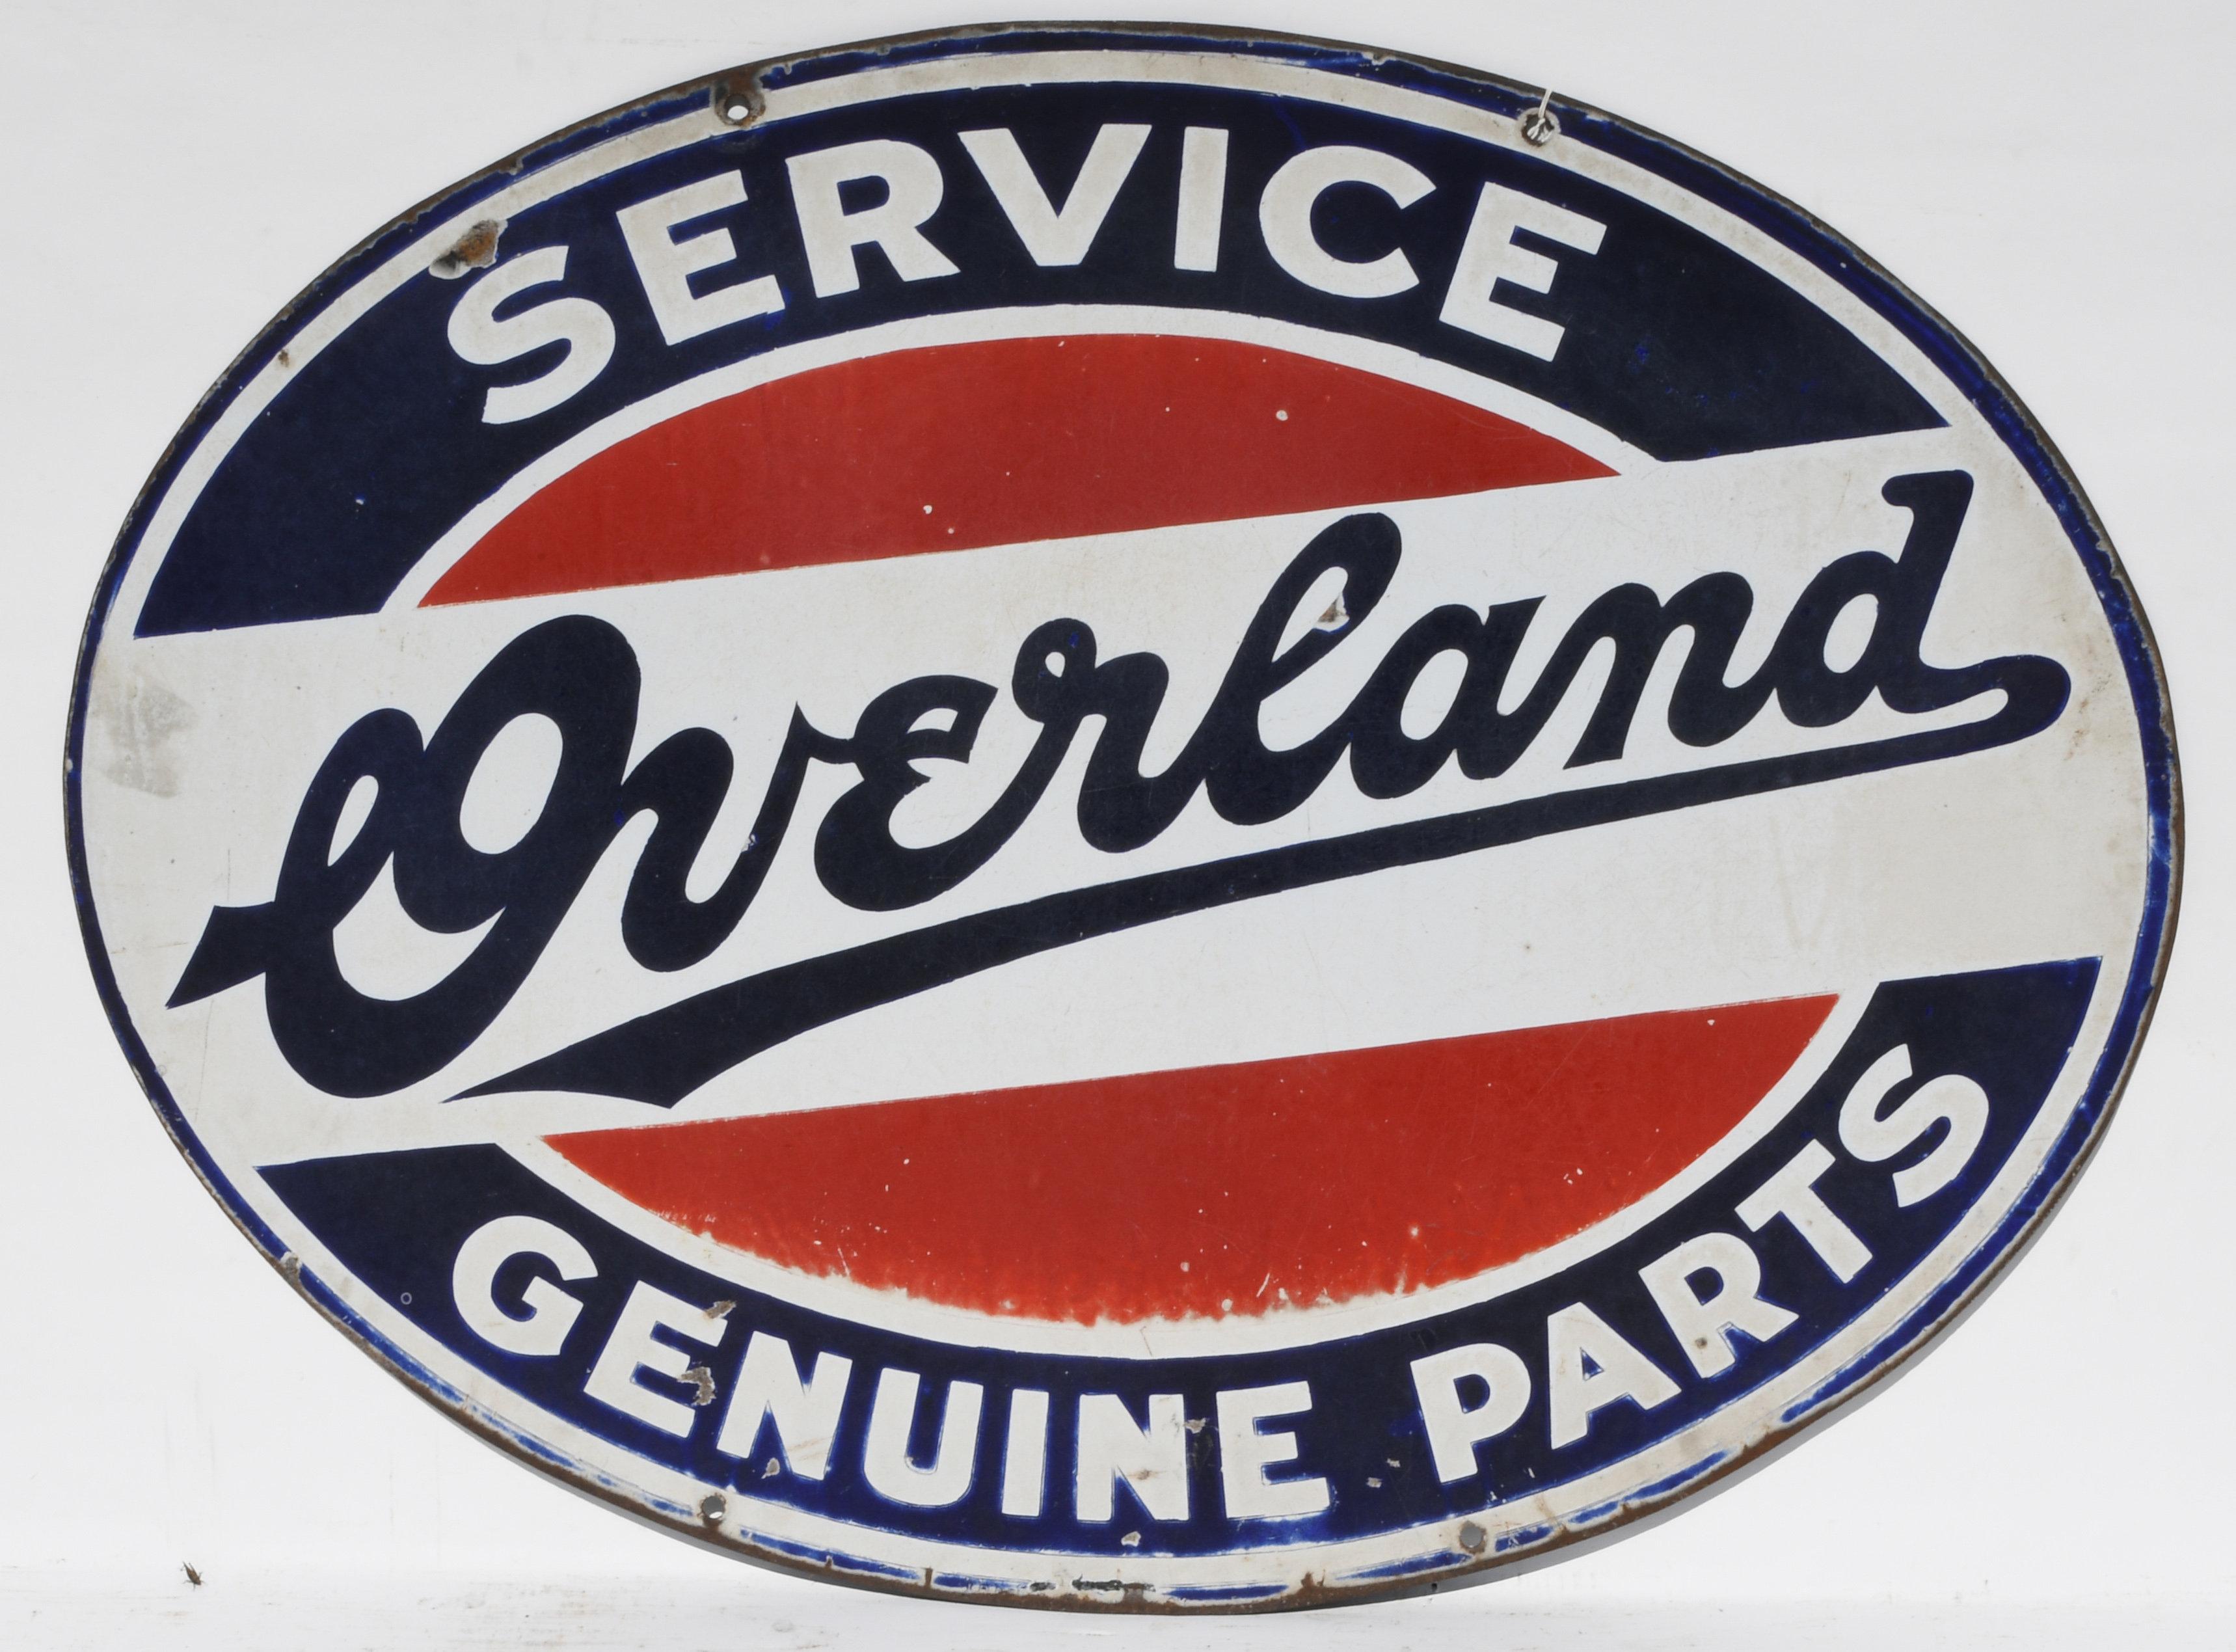 Overland Service Genuine Parts Porcelain Sign